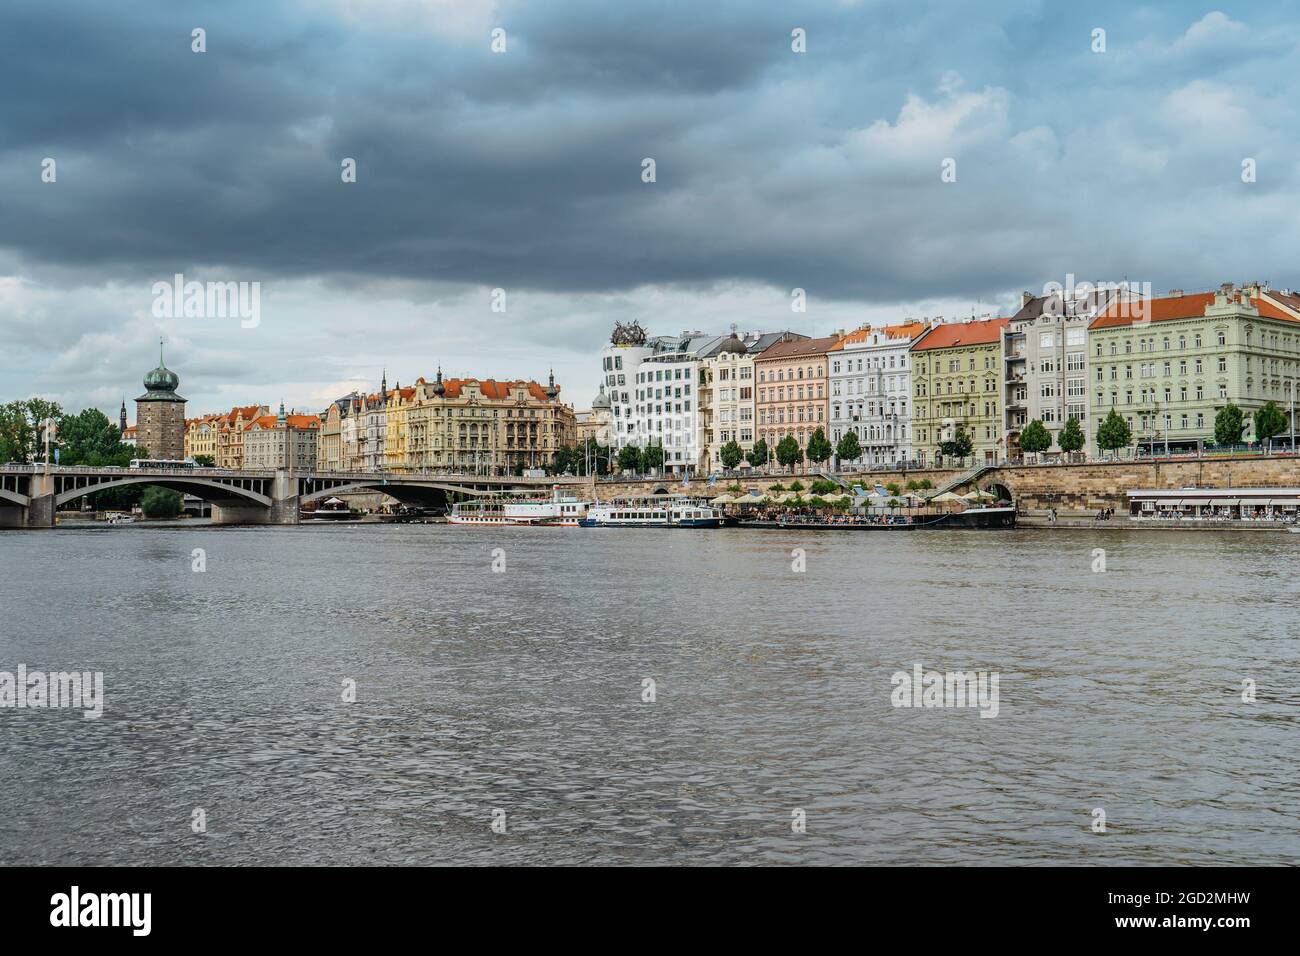 Praga, Repubblica Ceca. Incredibile vista della famosa Casa Danzante e Rasin Embankment.Riverfront edifici colorati, ponte sul fiume Moldava, barche. Foto Stock